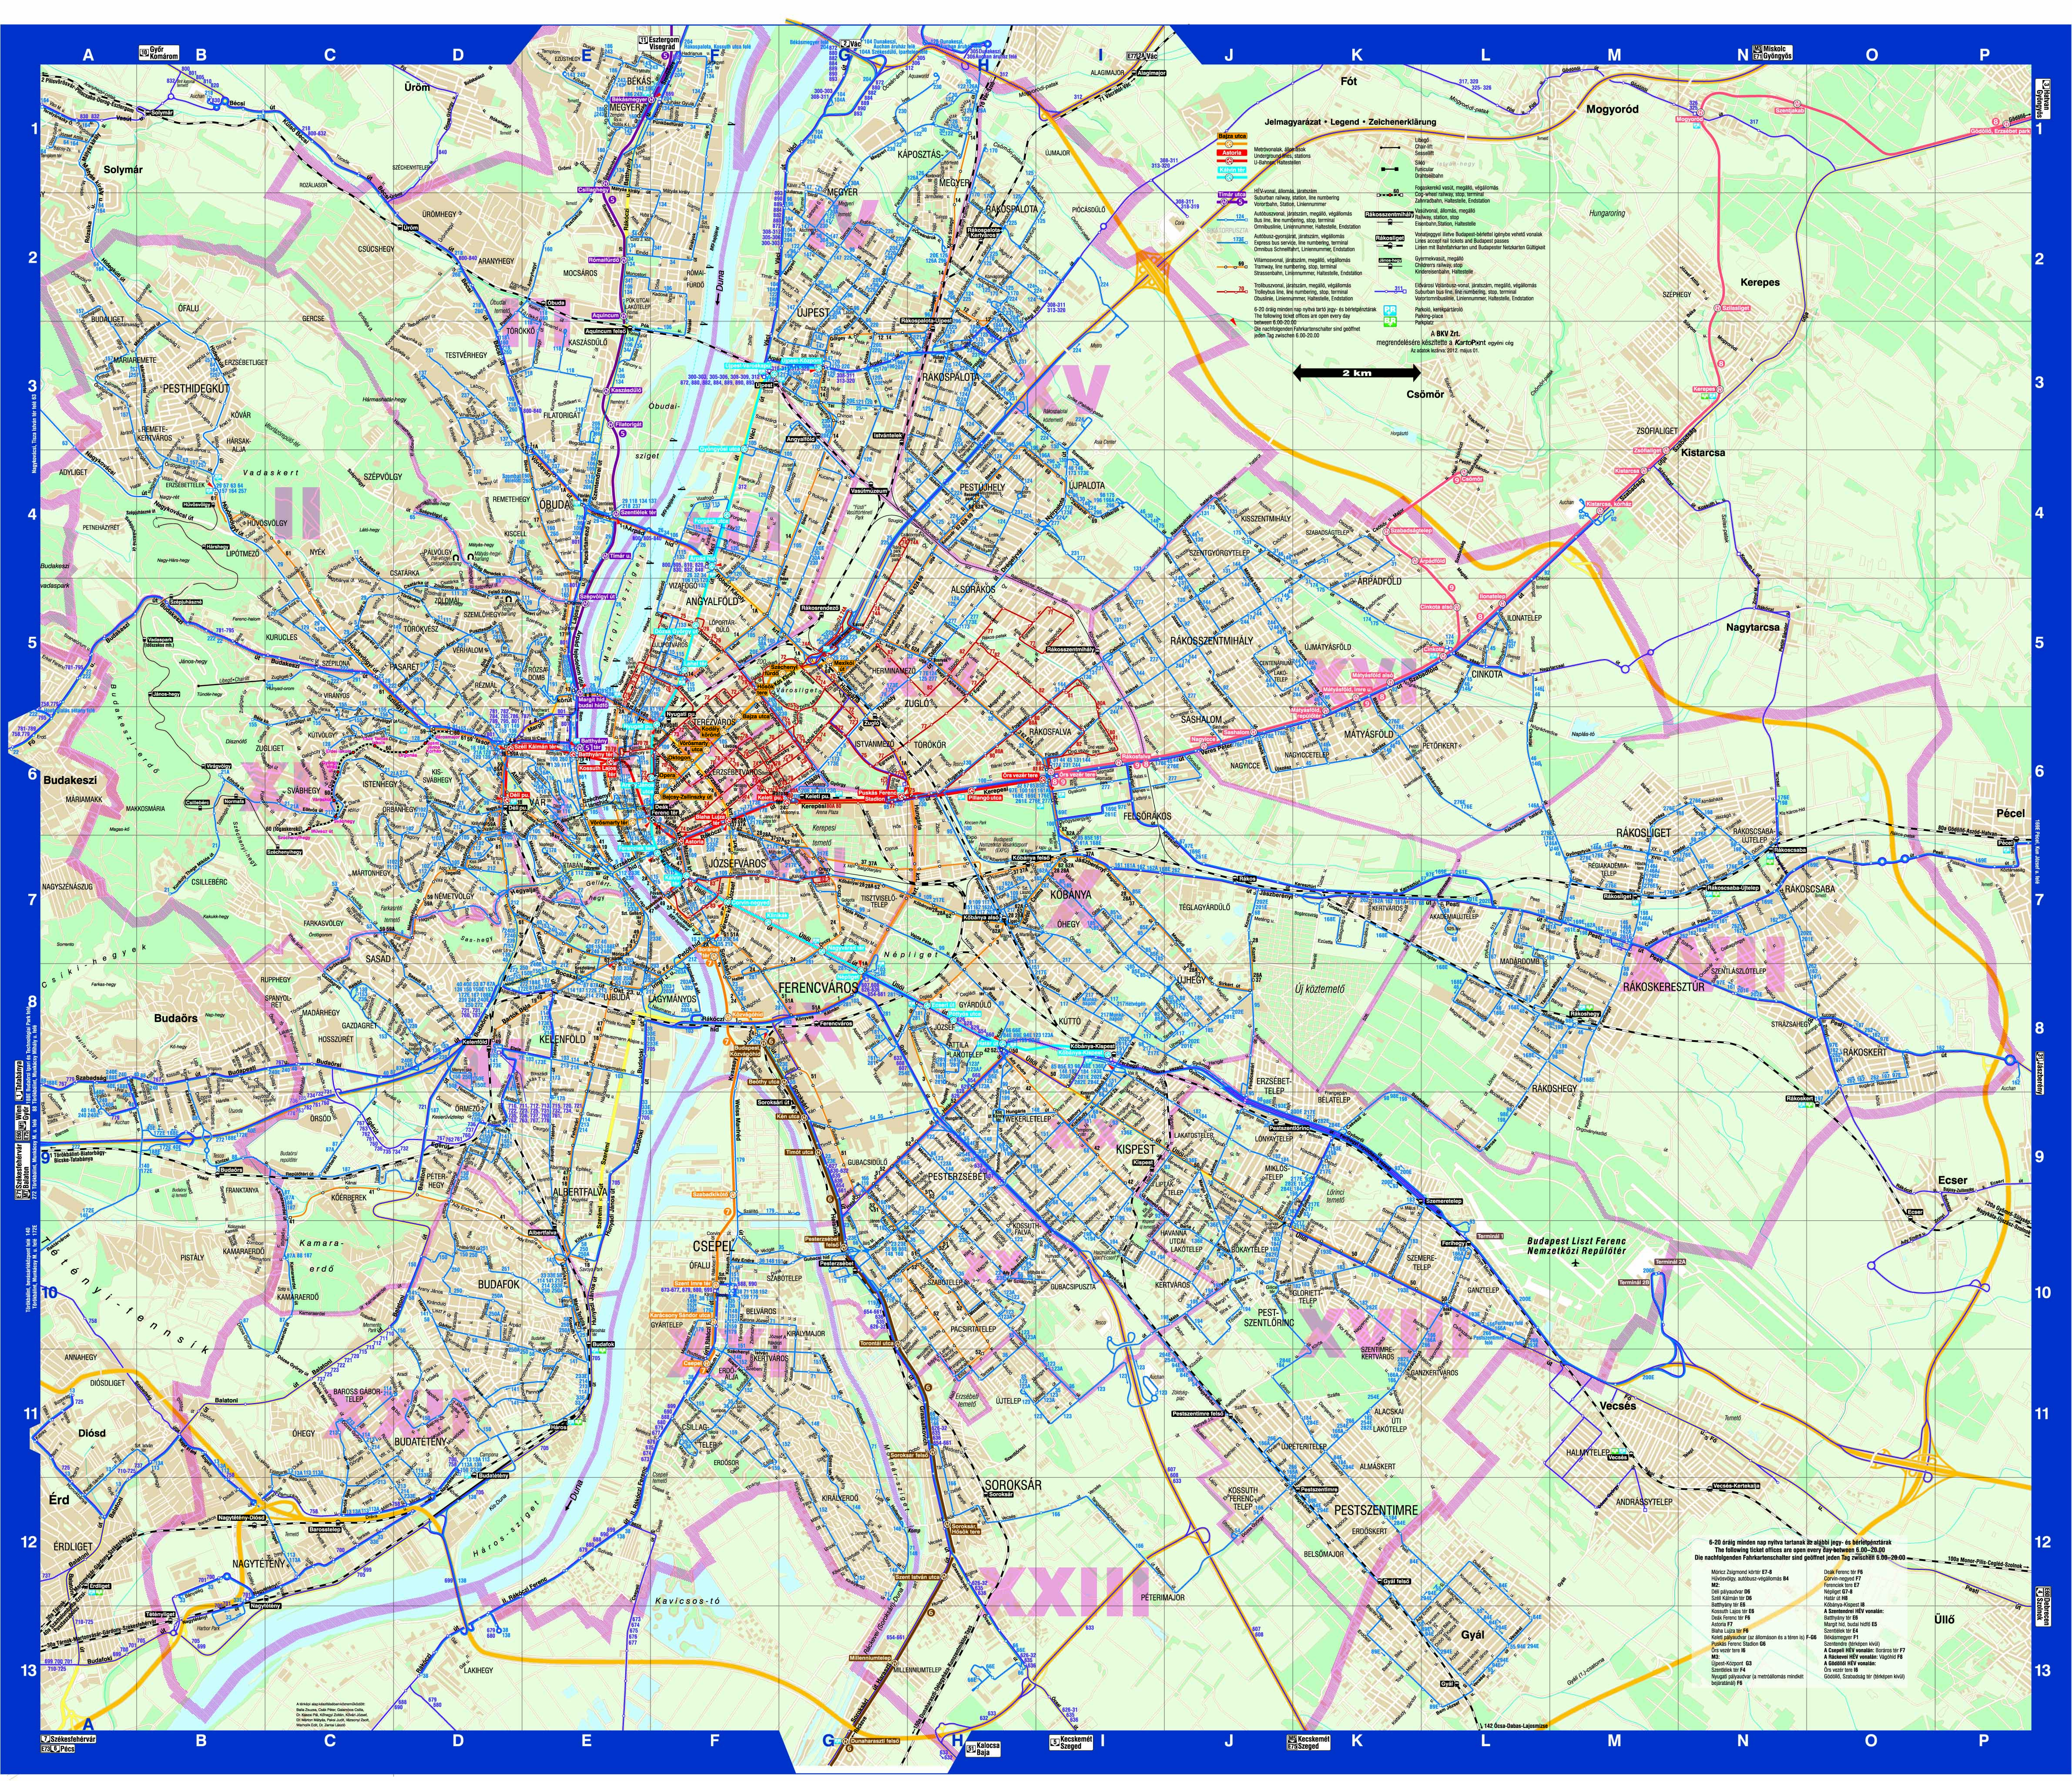 budapest közlekedési térkép Online térképek: Budapest közlekedési térkép budapest közlekedési térkép